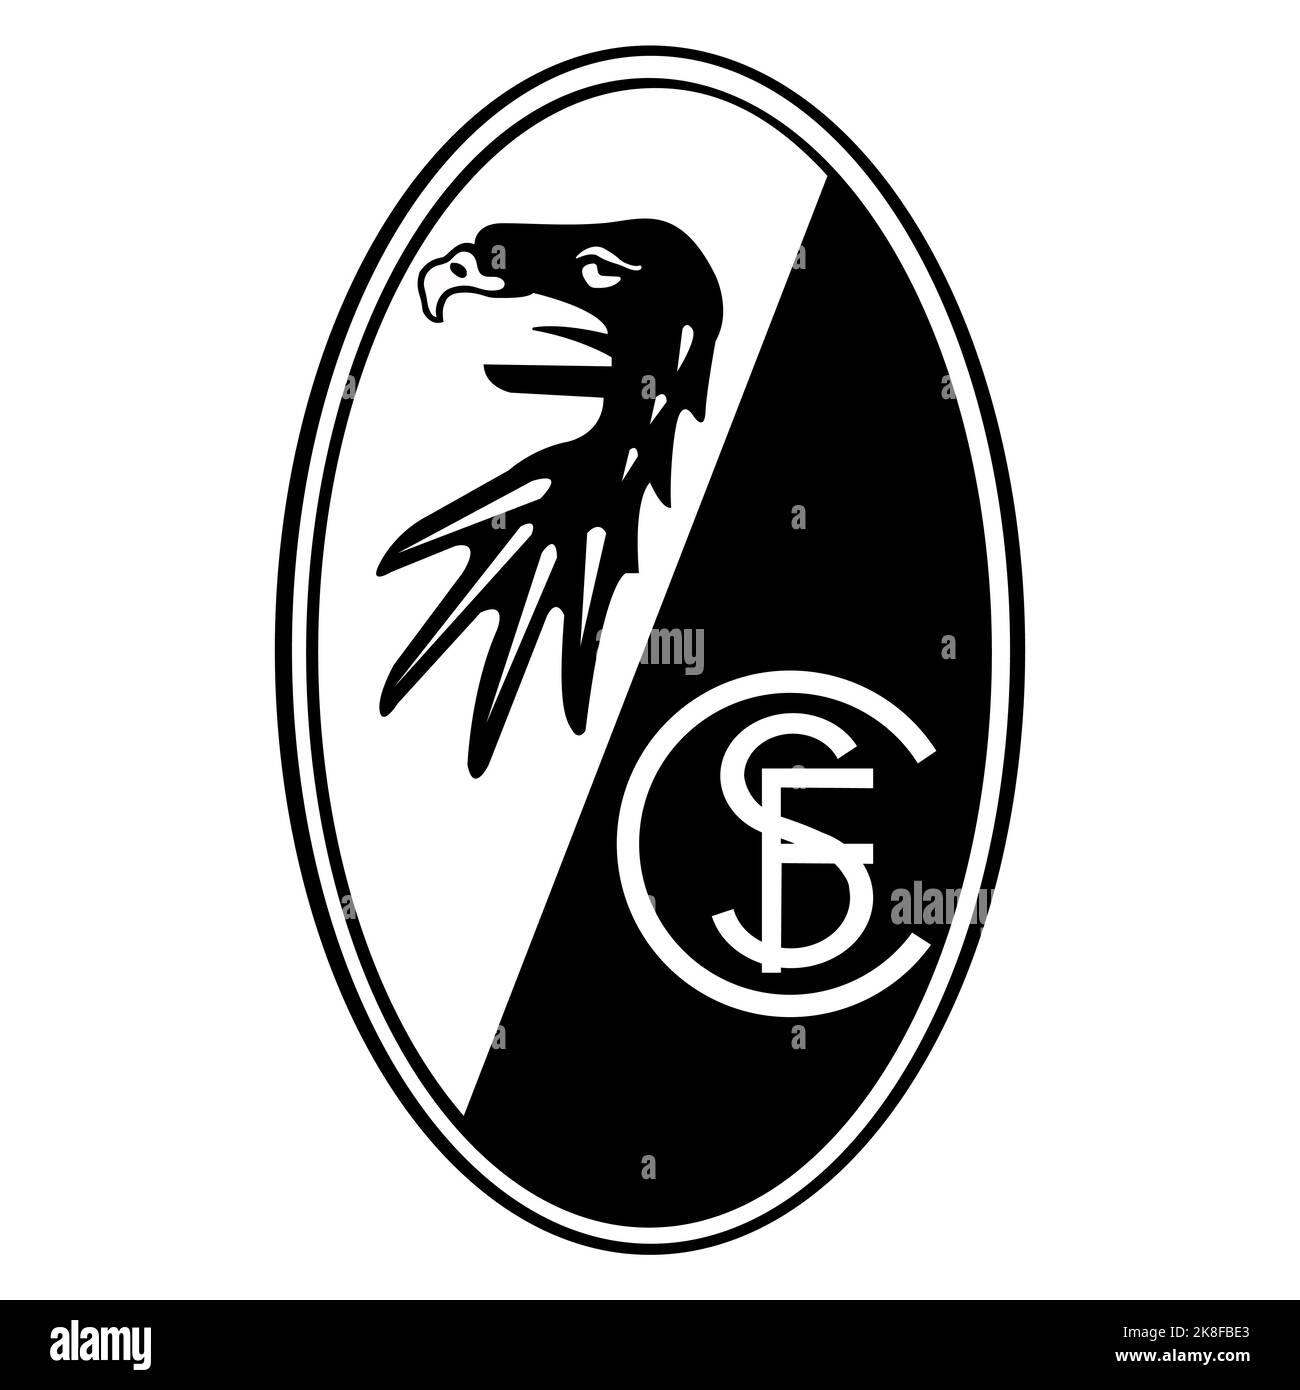 Francoforte sul meno, Germania - 10.23.2022 Logo della società calcistica tedesca Friburgo. Immagine vettoriale Illustrazione Vettoriale